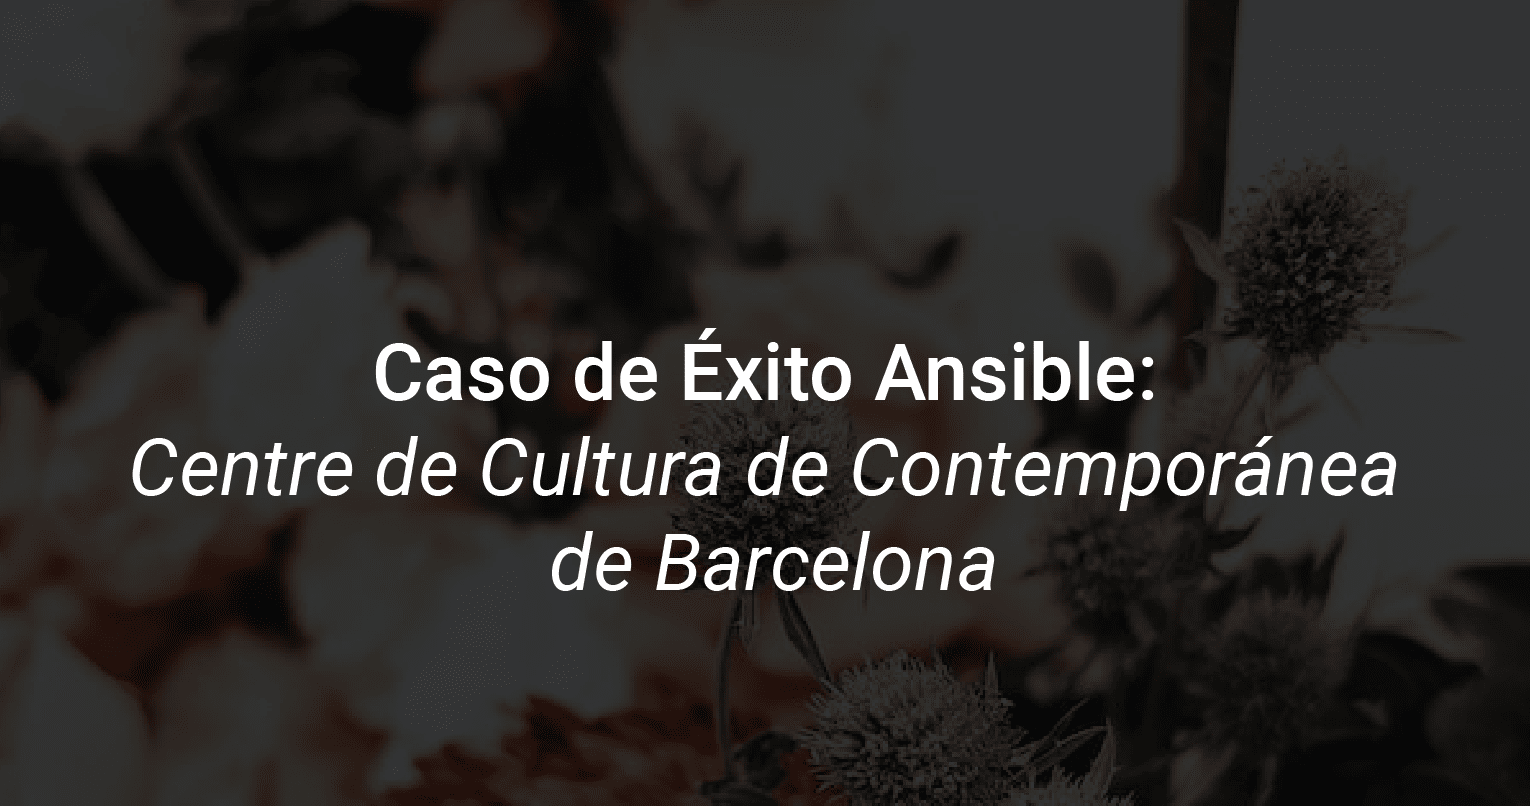 Caso de éxito de el centro de Cultura Contemporánea de Barcelona